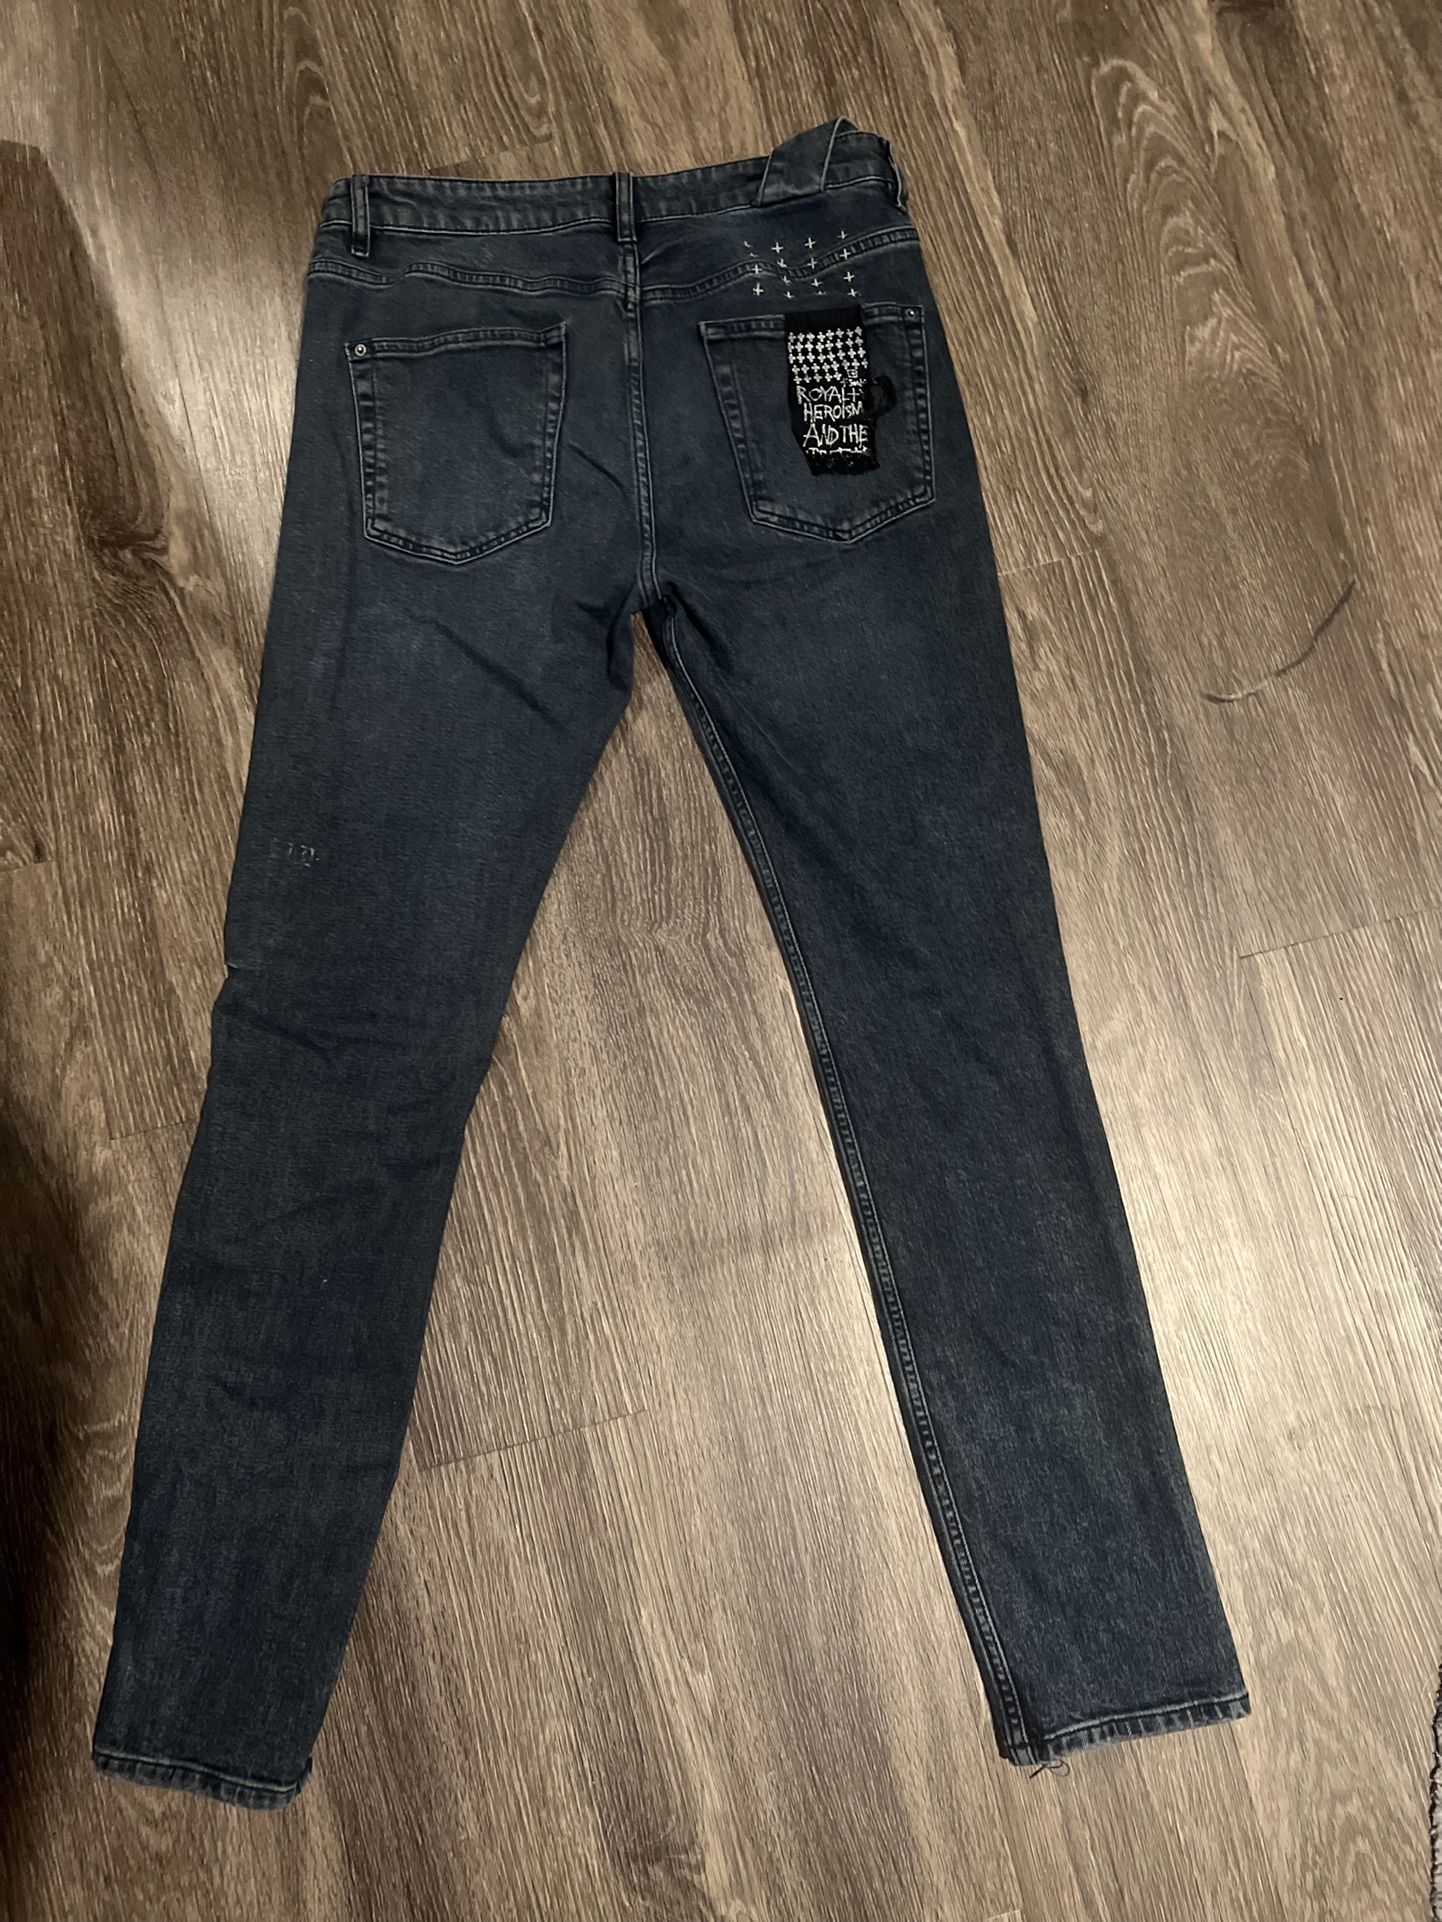 Ksube Jeans Size 32